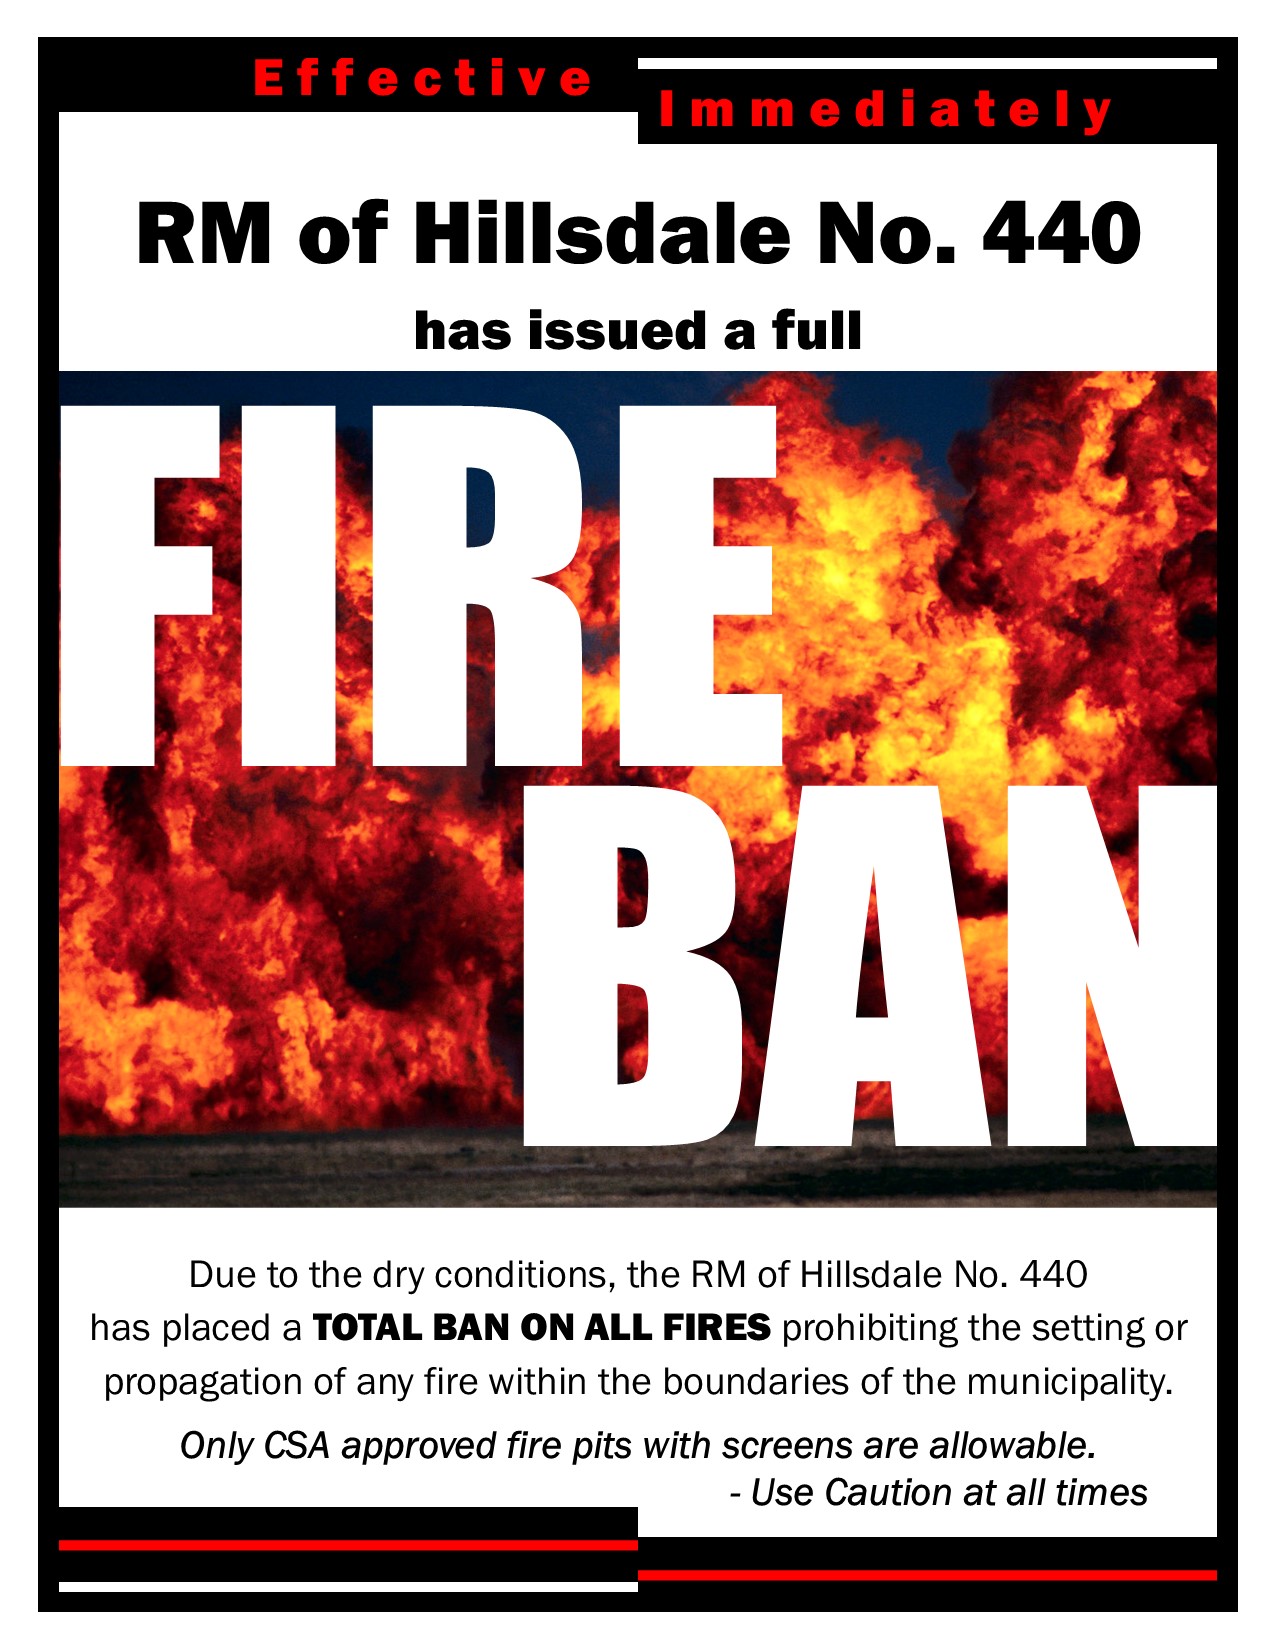 Fire Ban